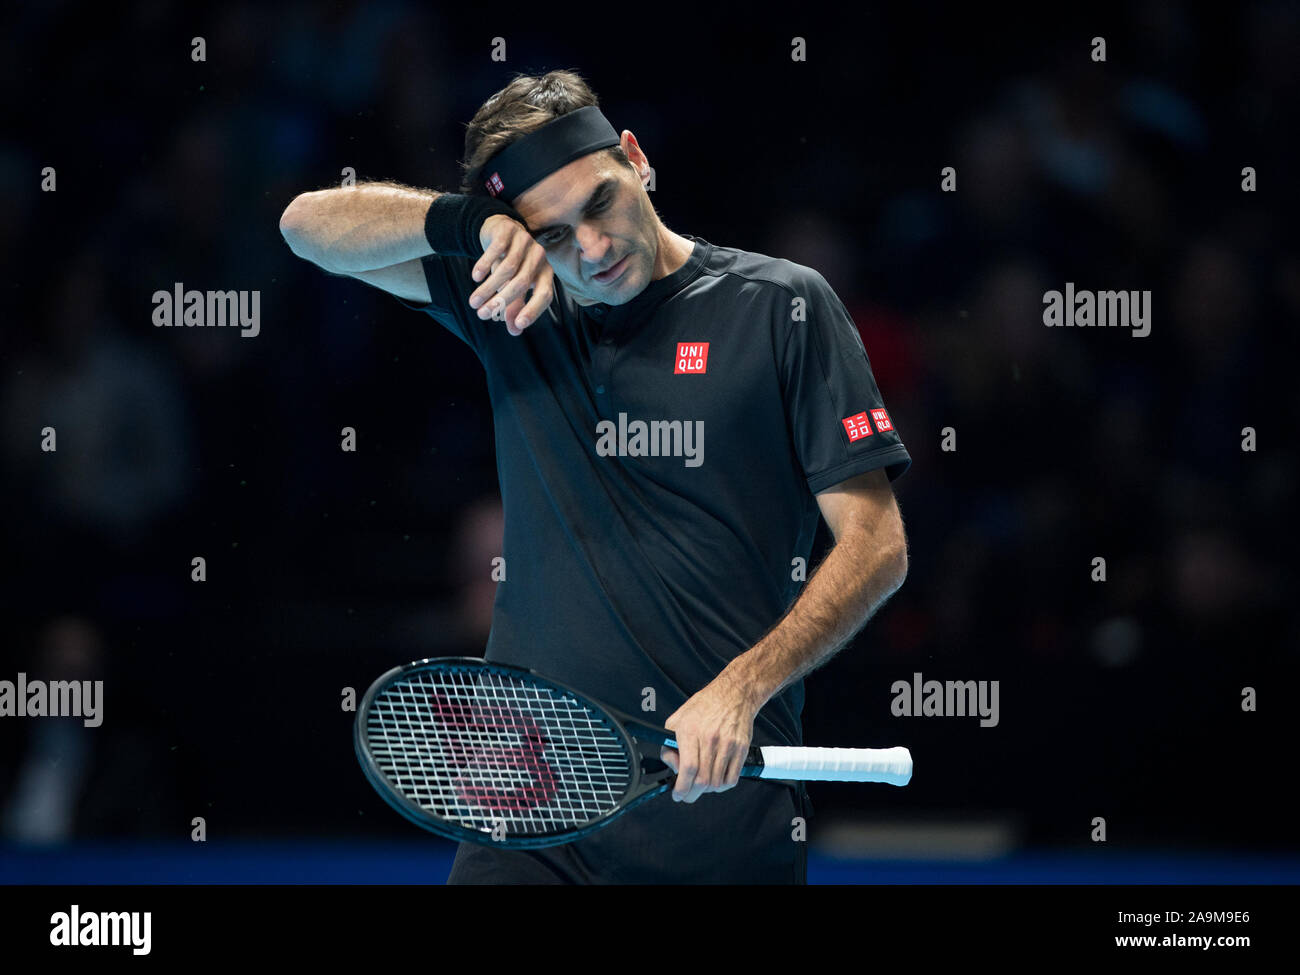 Londra, Regno Unito. Xv Nov, 2019. Roger Federer (Svizzera) durante il suo semi finale perdita durante il Nitto ATP Finals Tennis Londra giorno 6 presso l'O2, Londra, Inghilterra il 15 novembre 2019. Foto di Andy Rowland. Credito: prime immagini multimediali/Alamy Live News Foto Stock